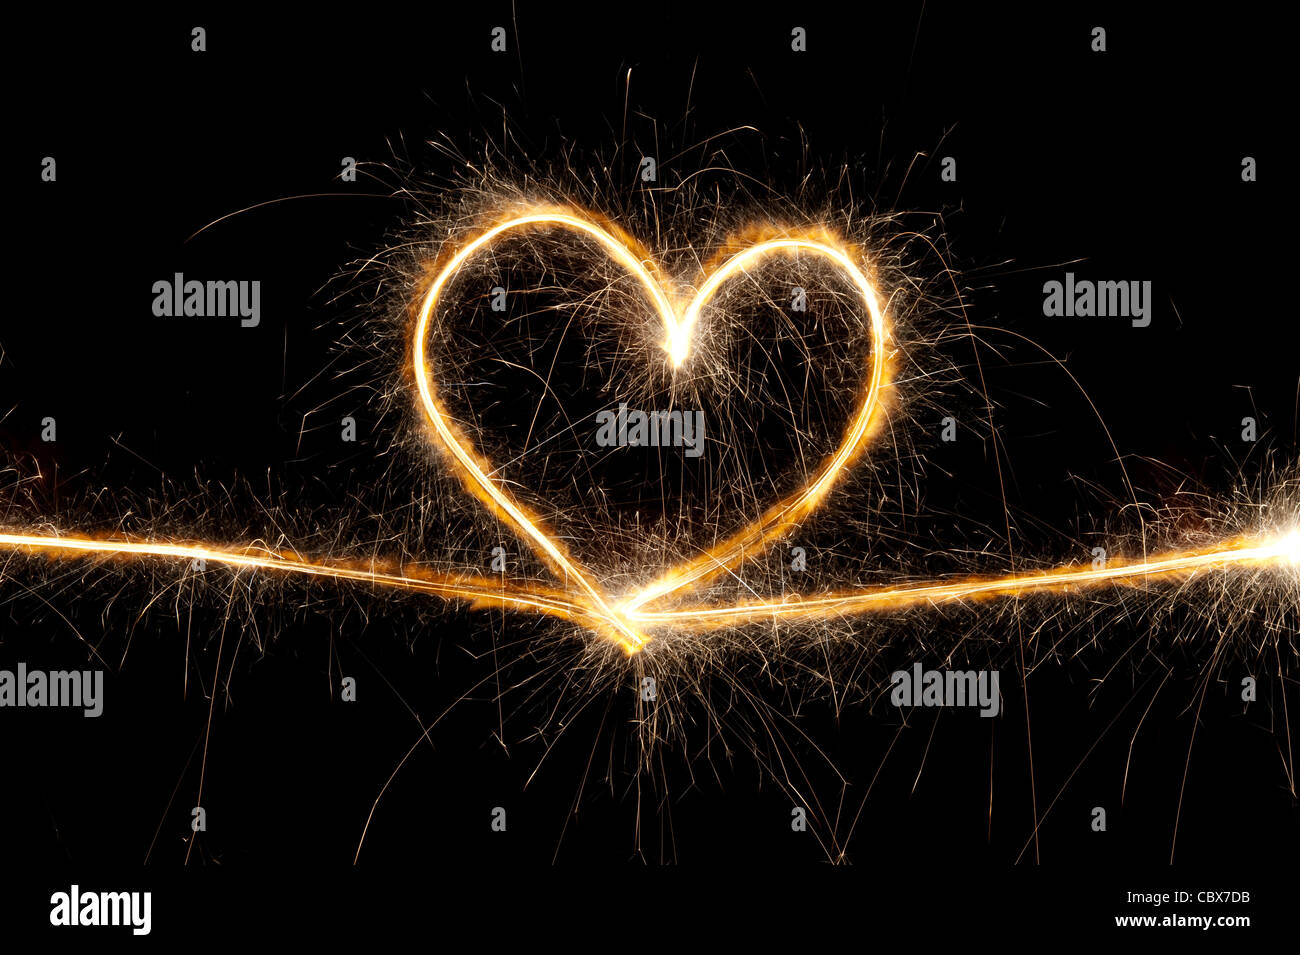 Notte di cuore immagini e fotografie stock ad alta risoluzione - Alamy